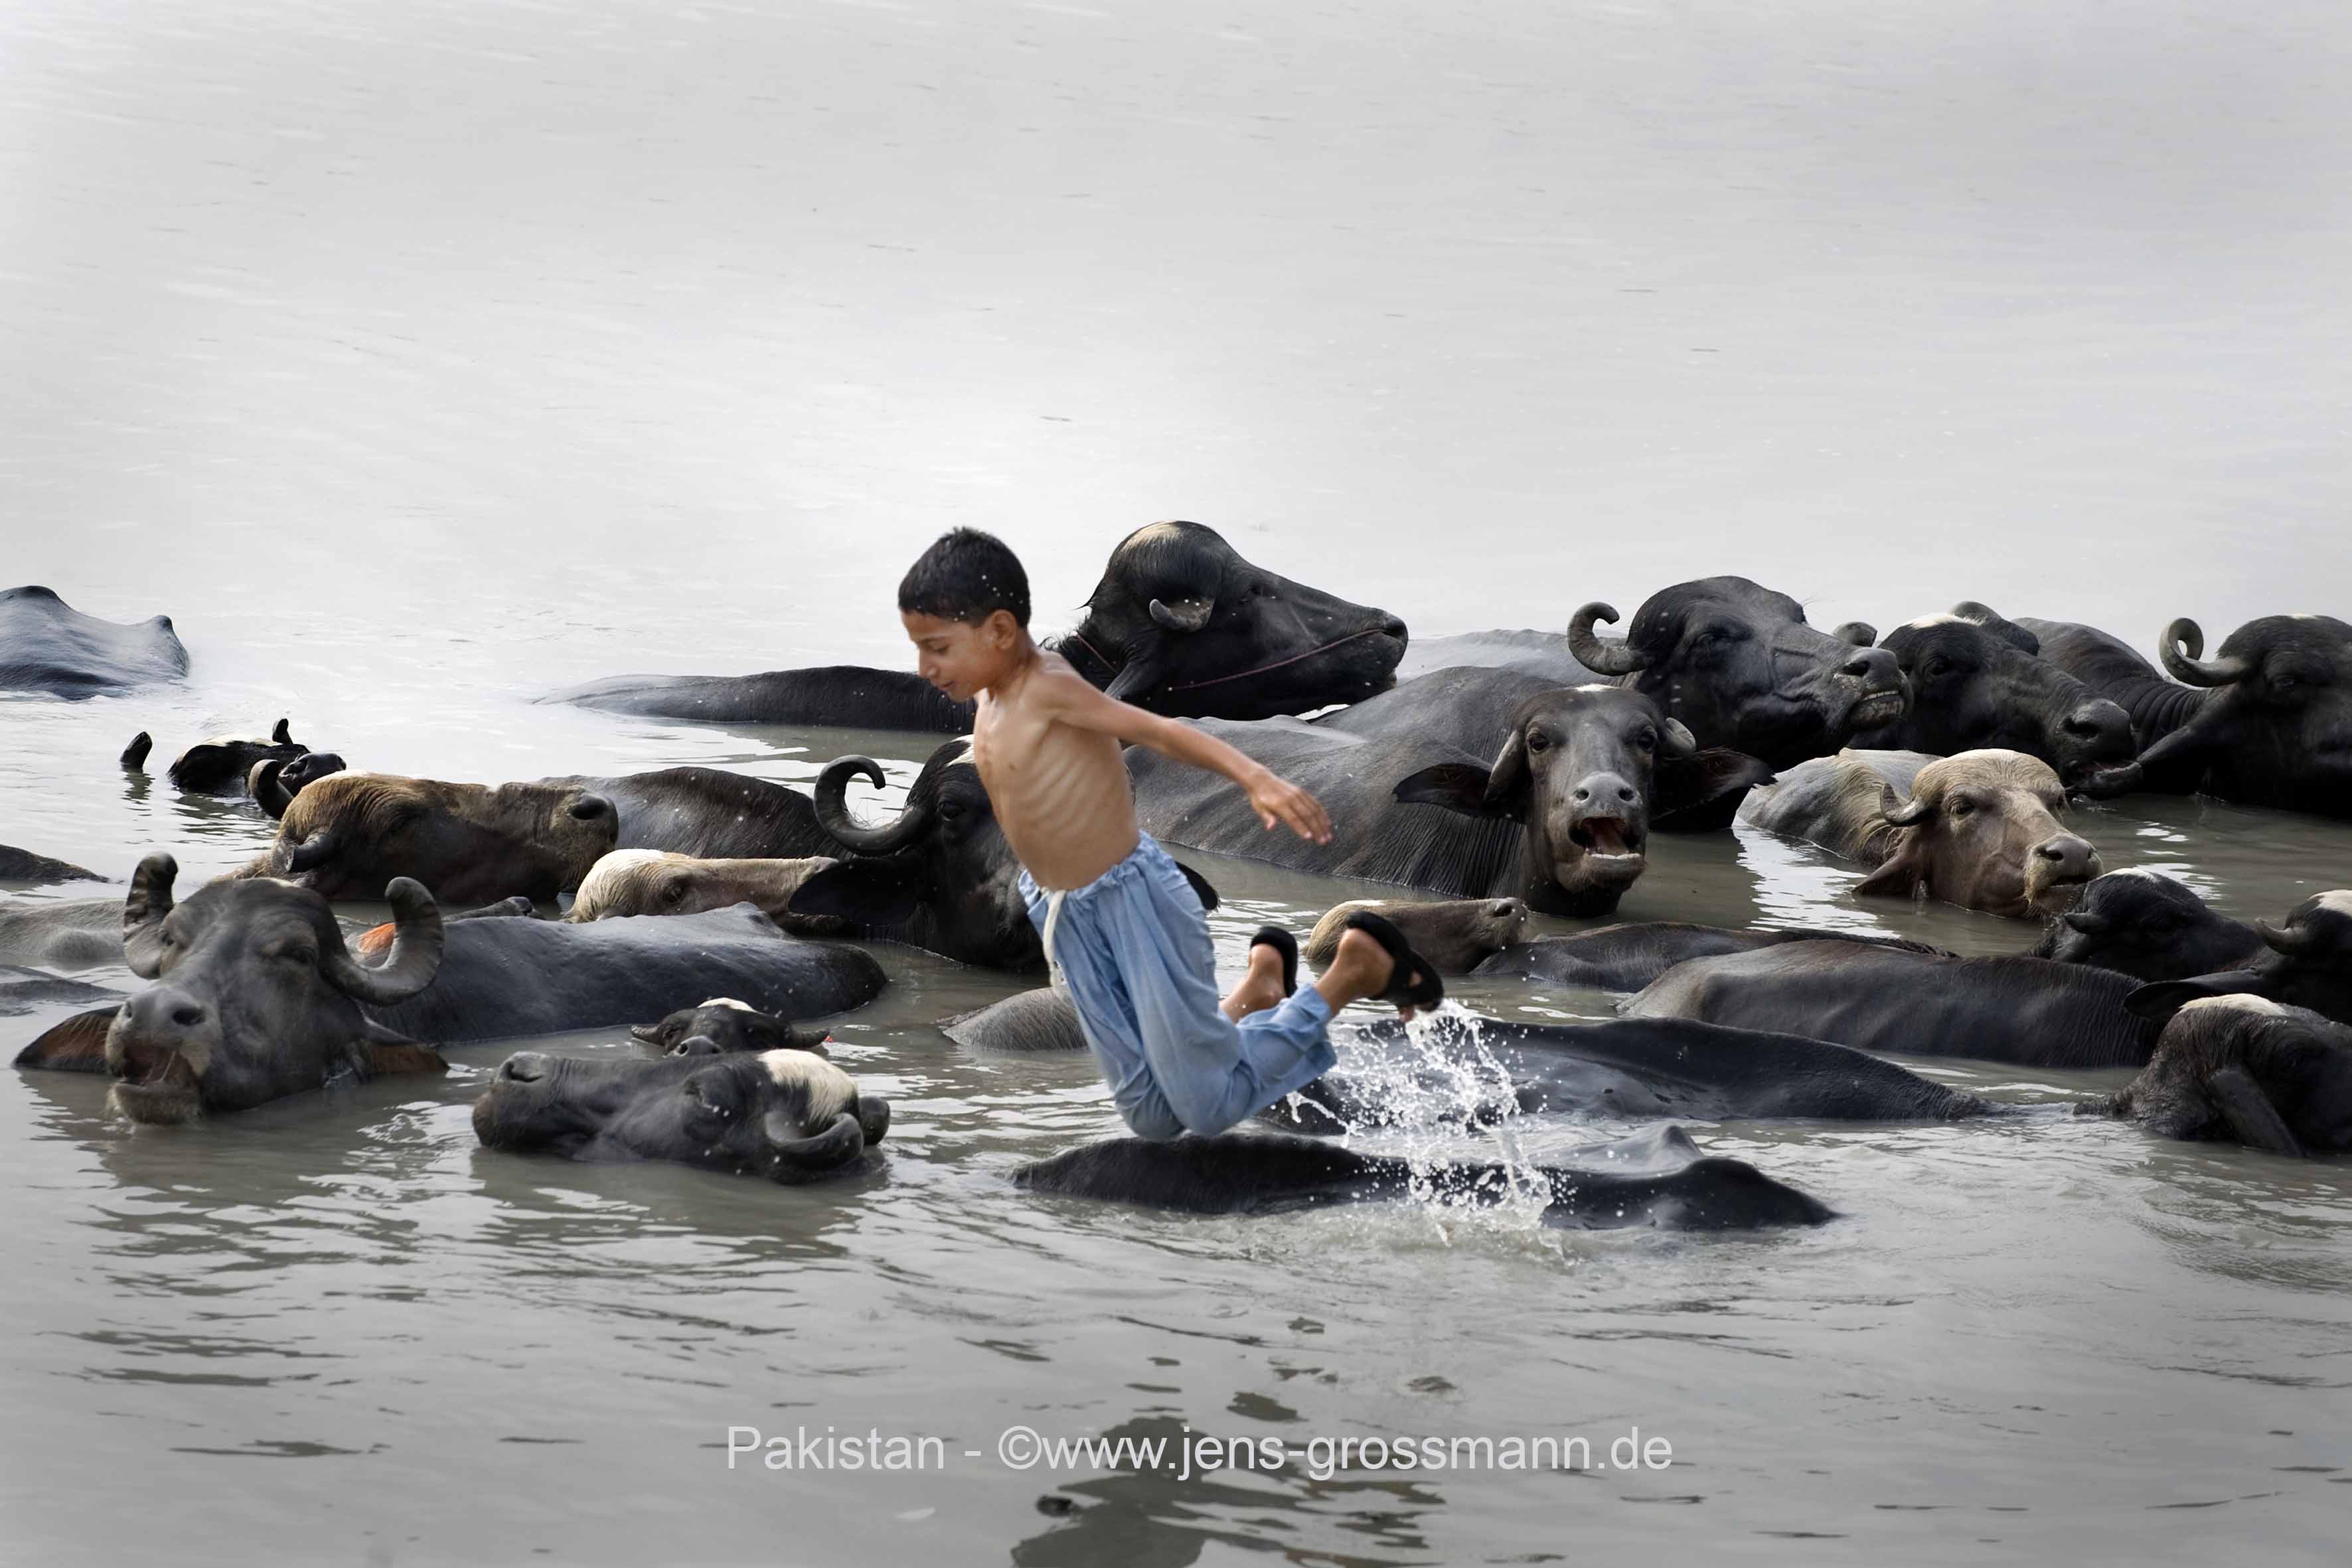 Pakistan, Peshawar, Pir Sabaq, Junge mit Viehherde in Wasser